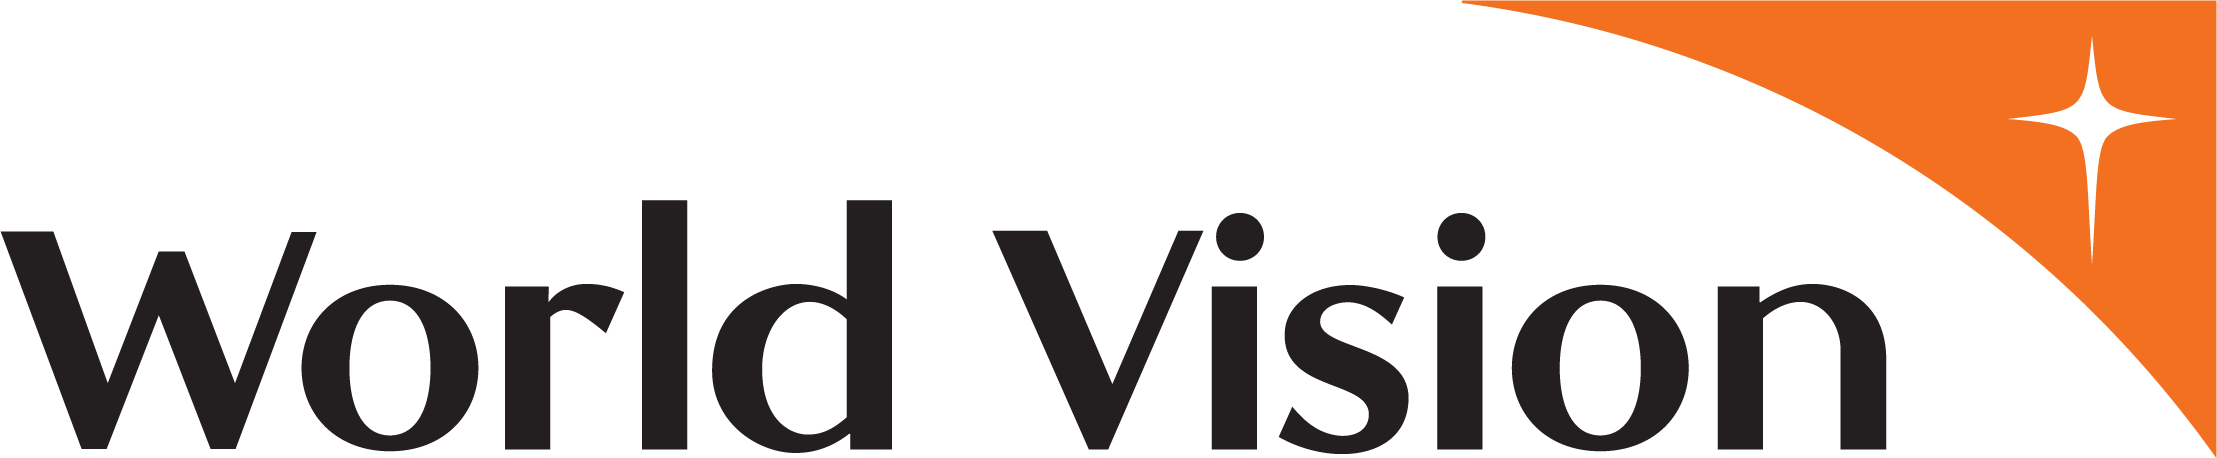 World_Vision_new_logo.png